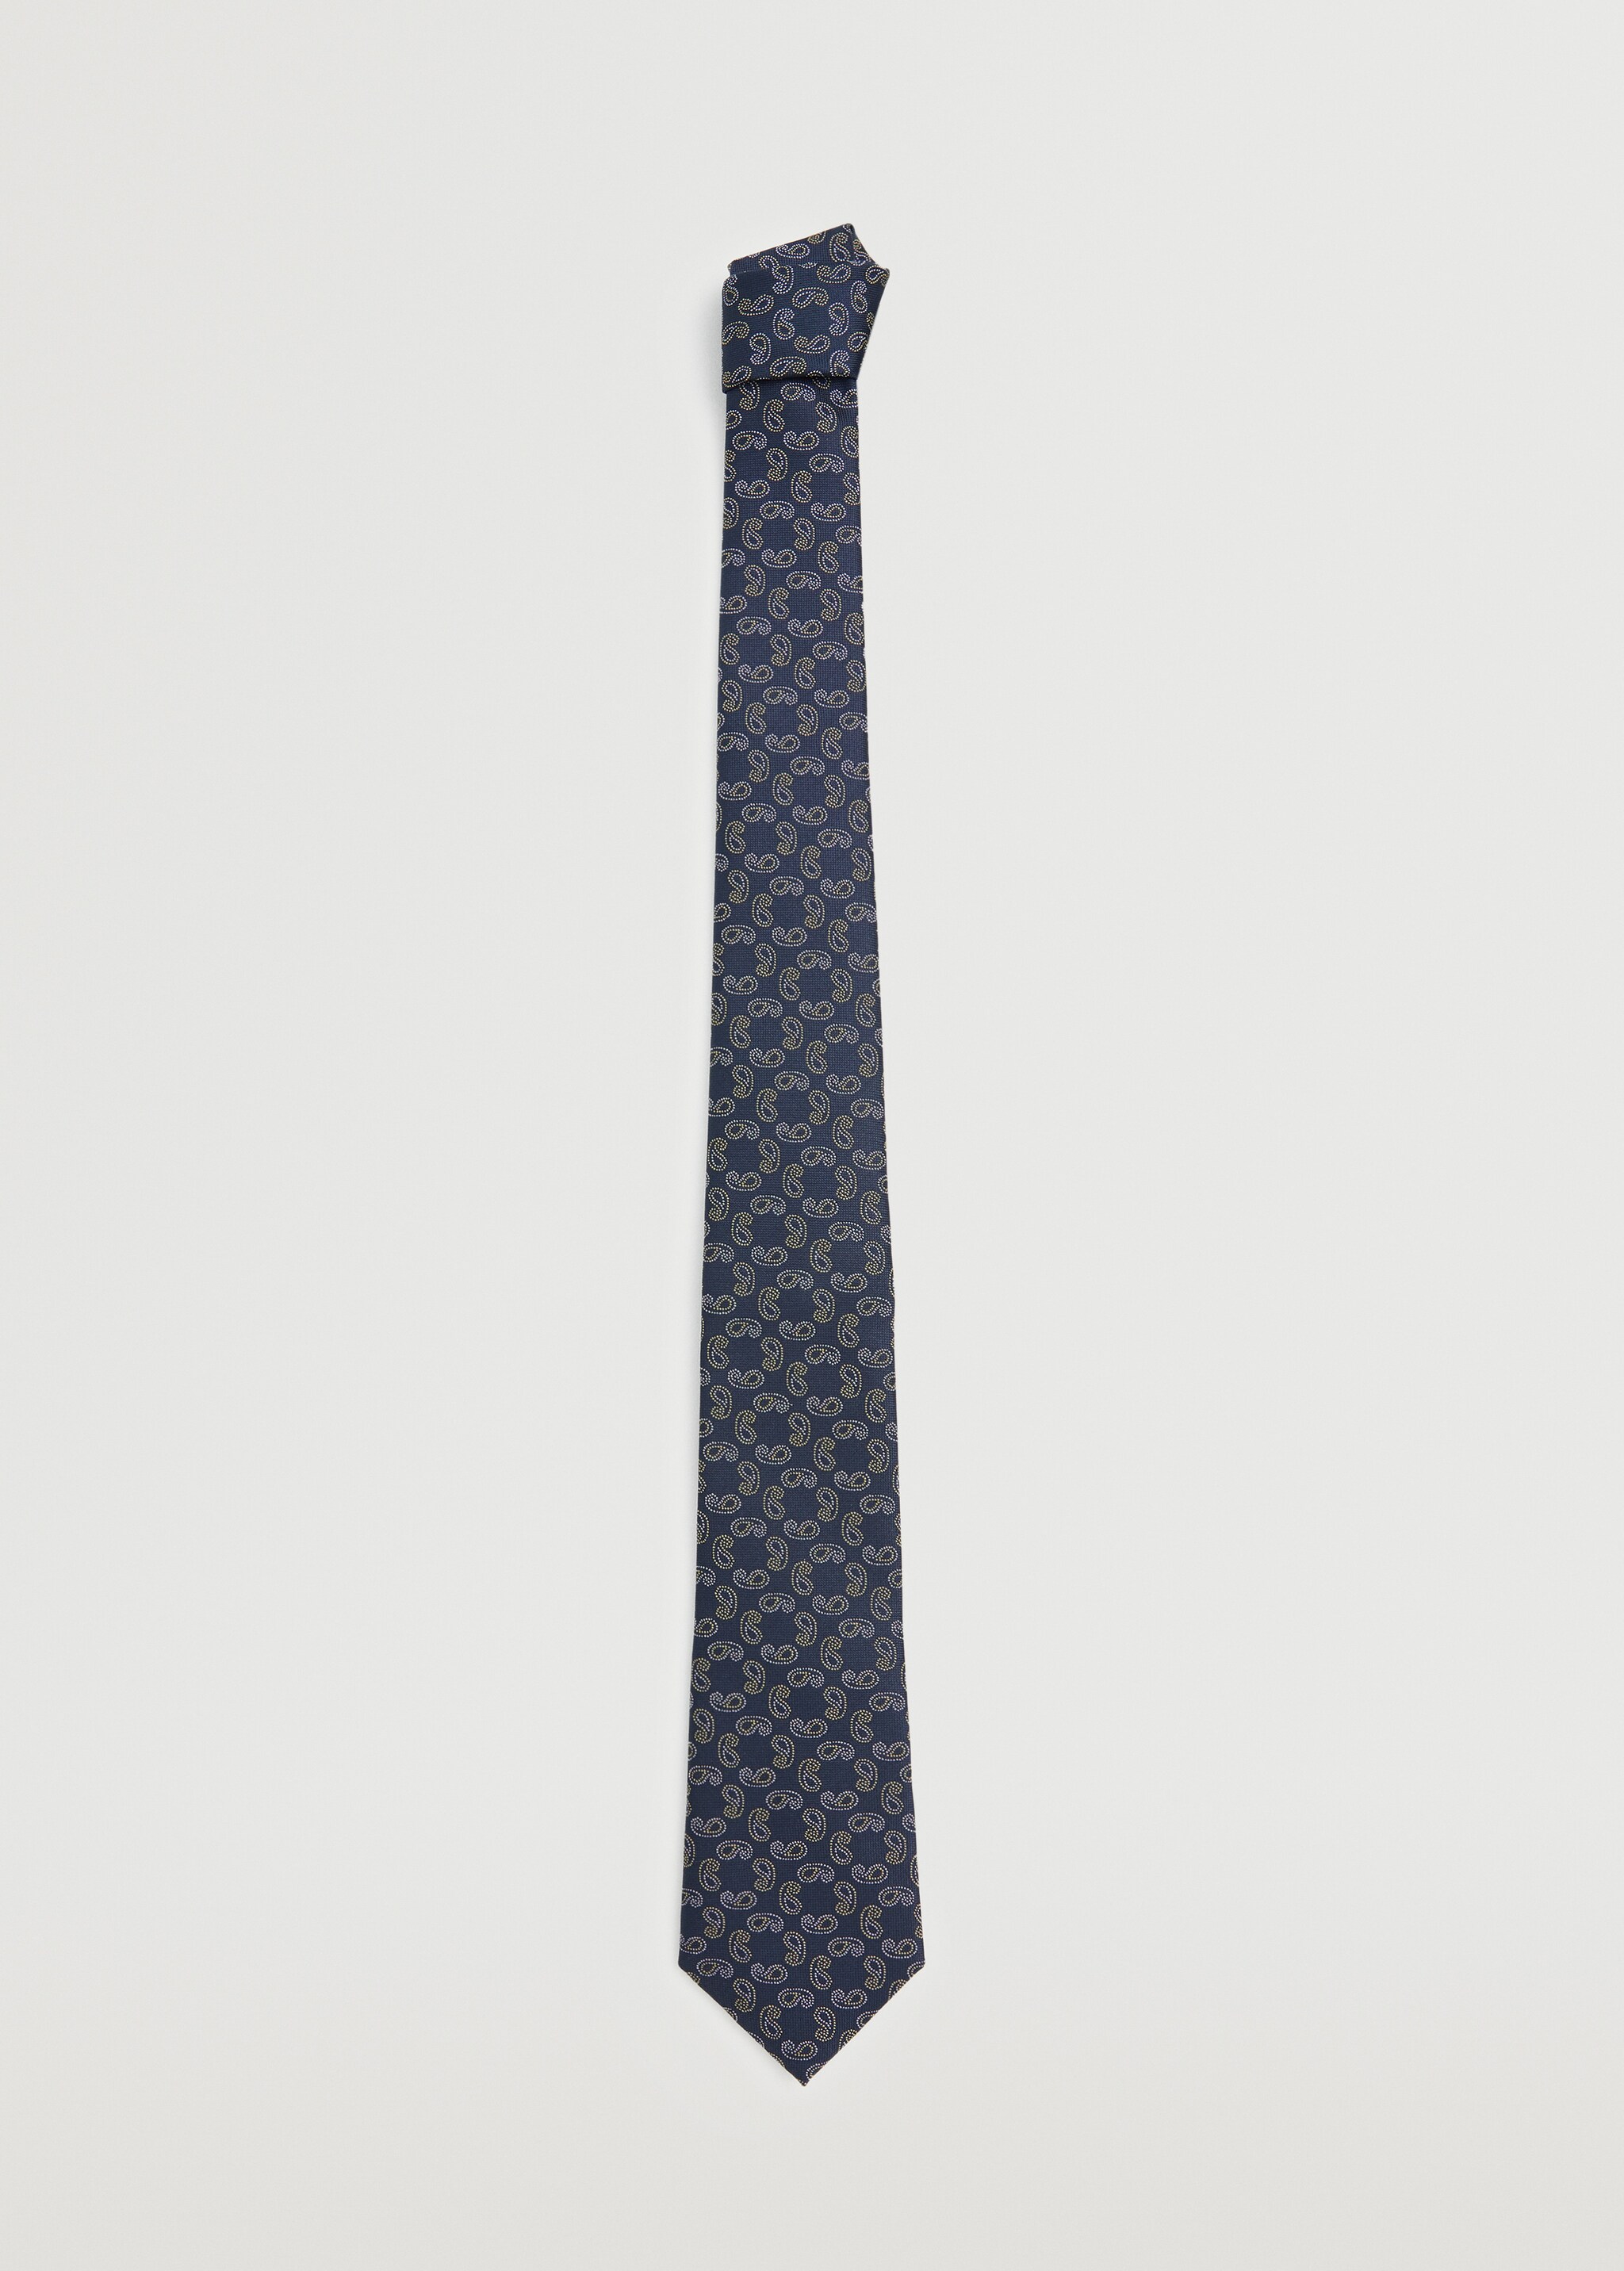 Corbata estampado paisley - Artículo sin modelo